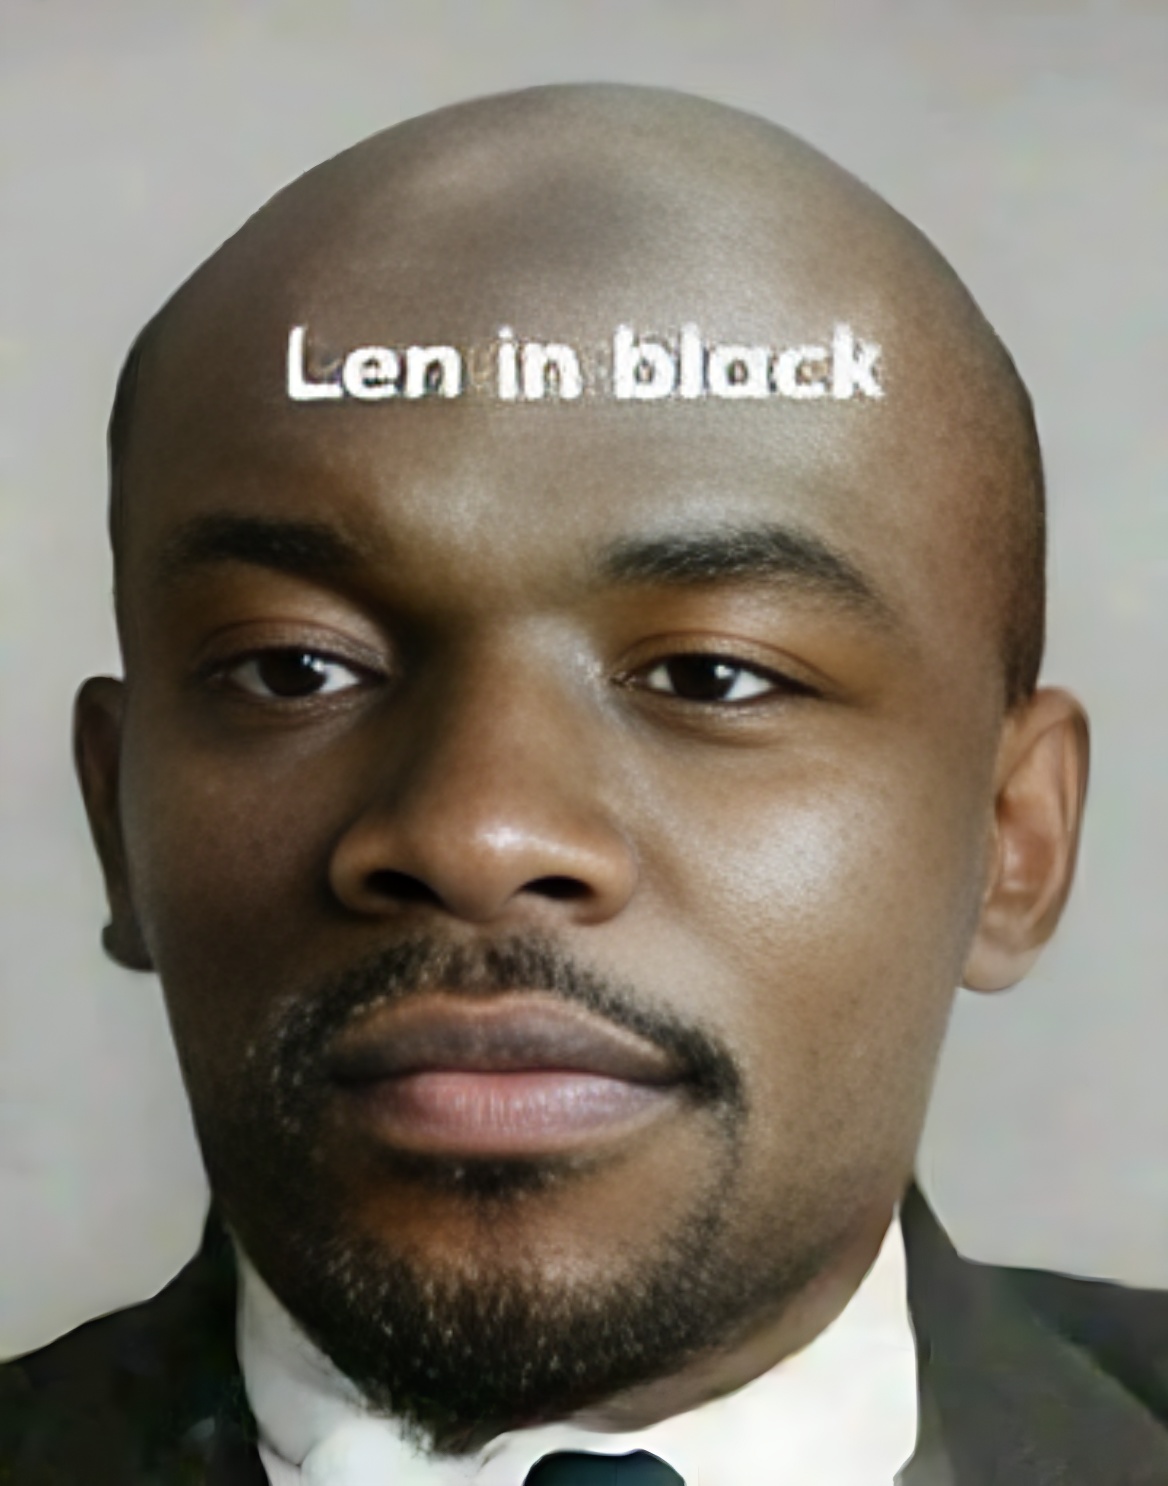 Lenin in black